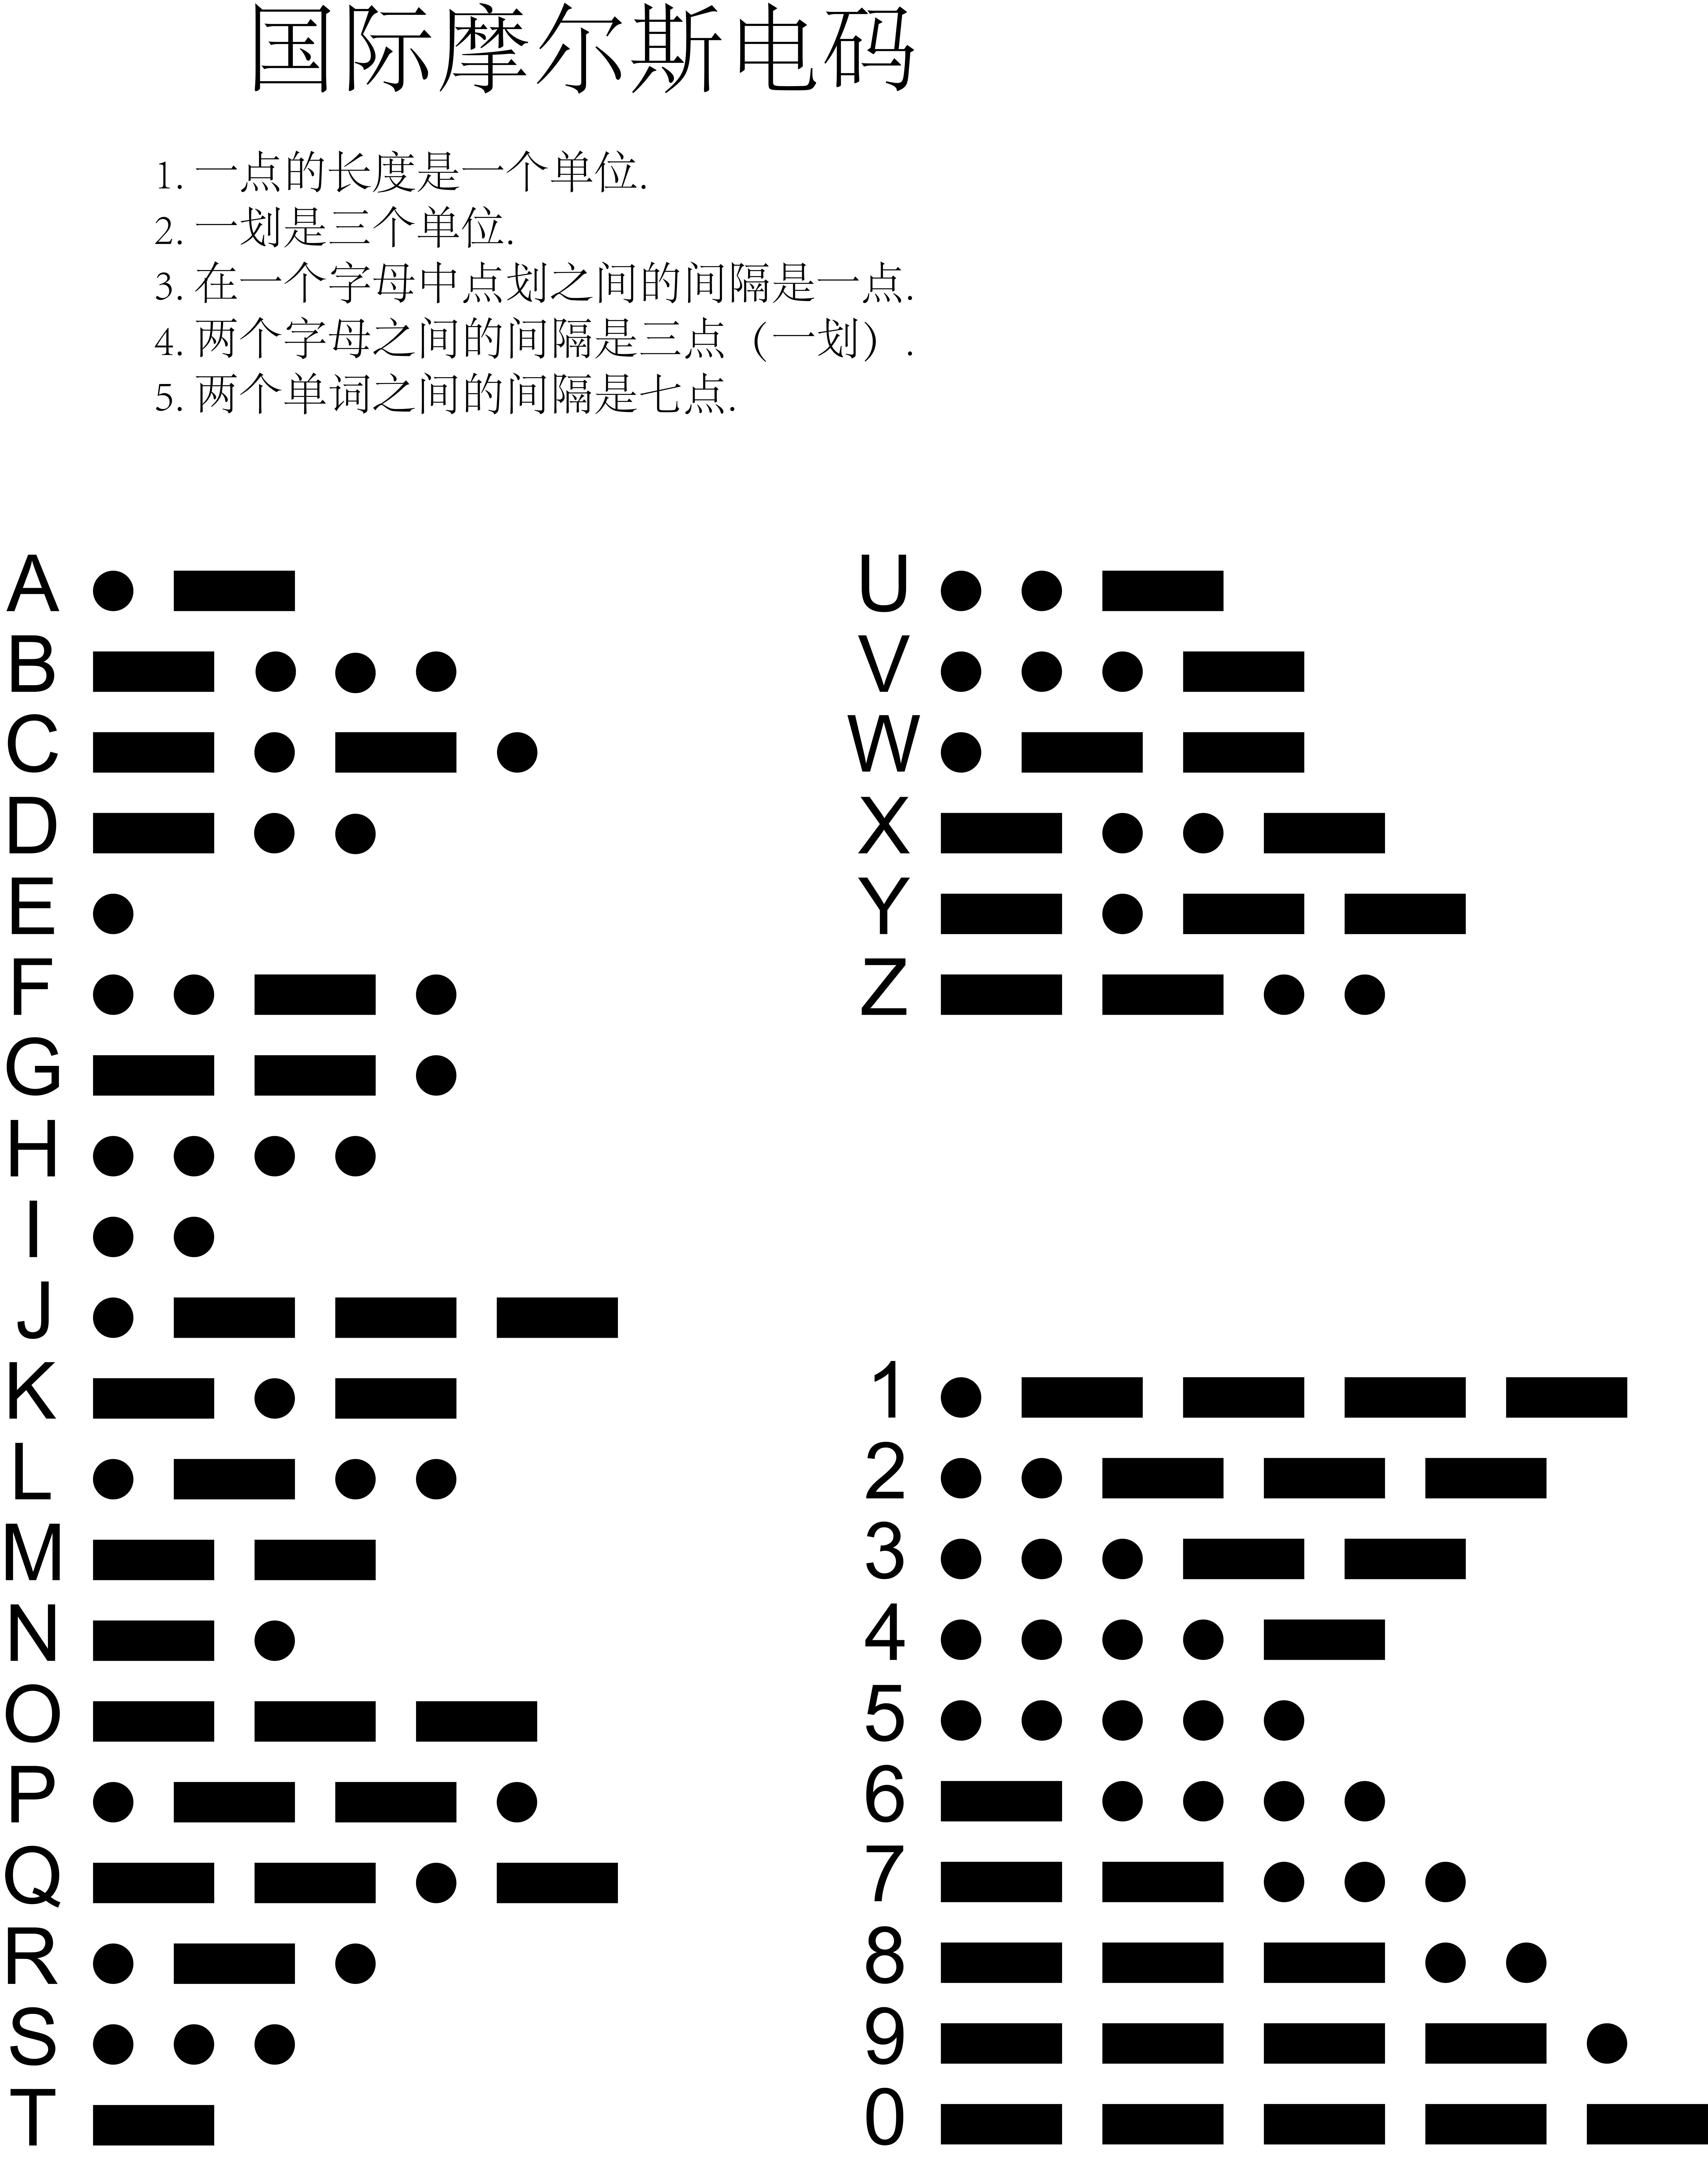 二十六个字母摩斯密码图片